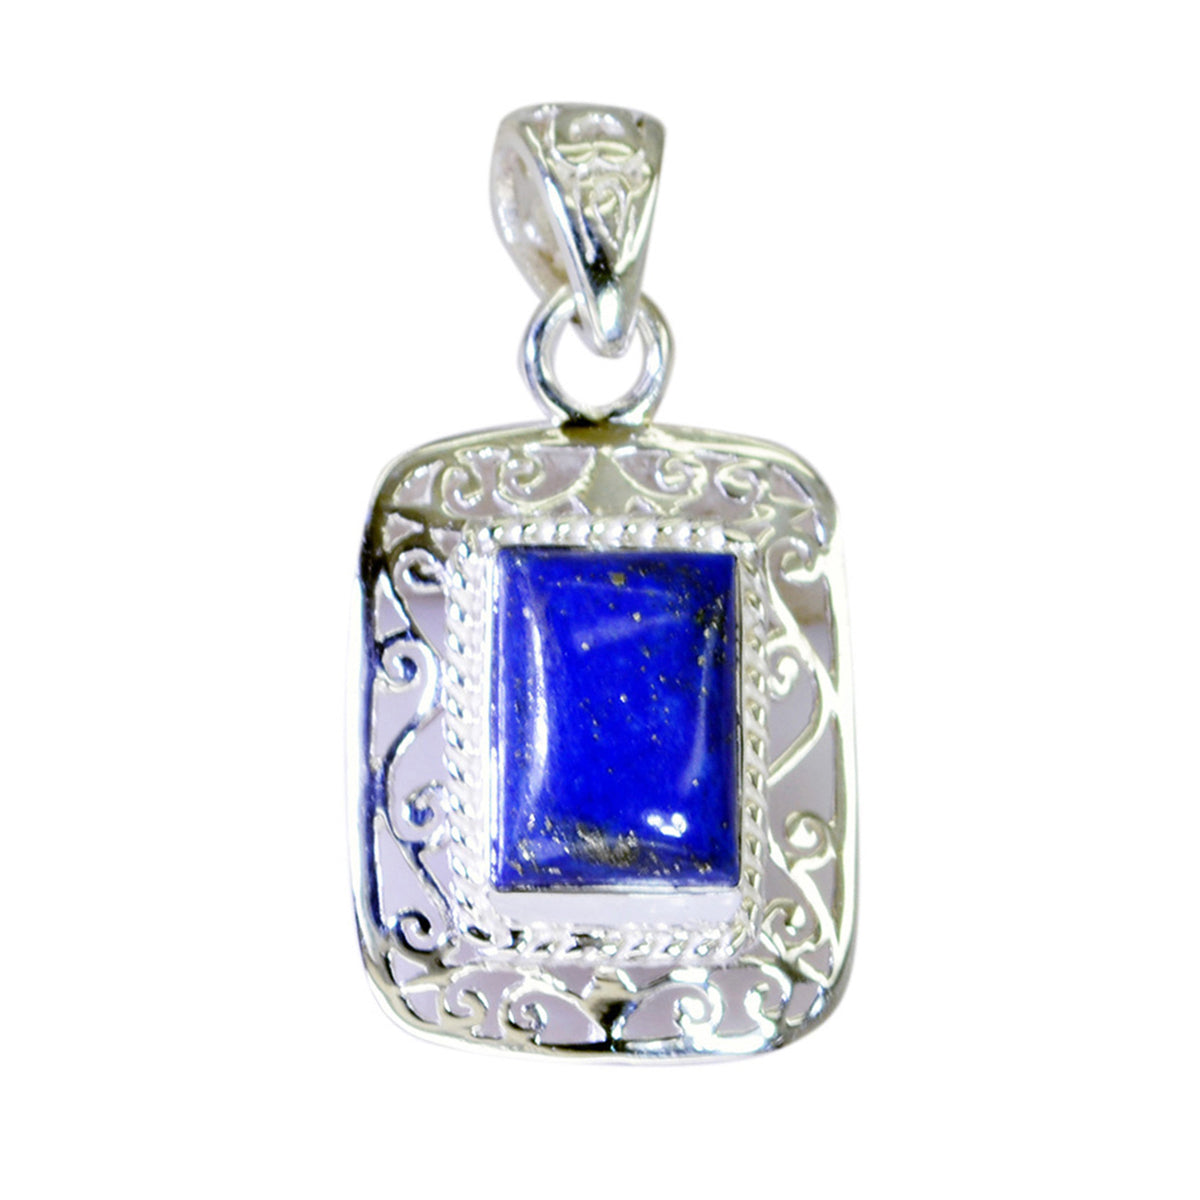 Riyo magnifique pierre précieuse octogone cabochon nevy bleu lapis lazuli 1188 pendentif en argent sterling cadeau pour petite amie